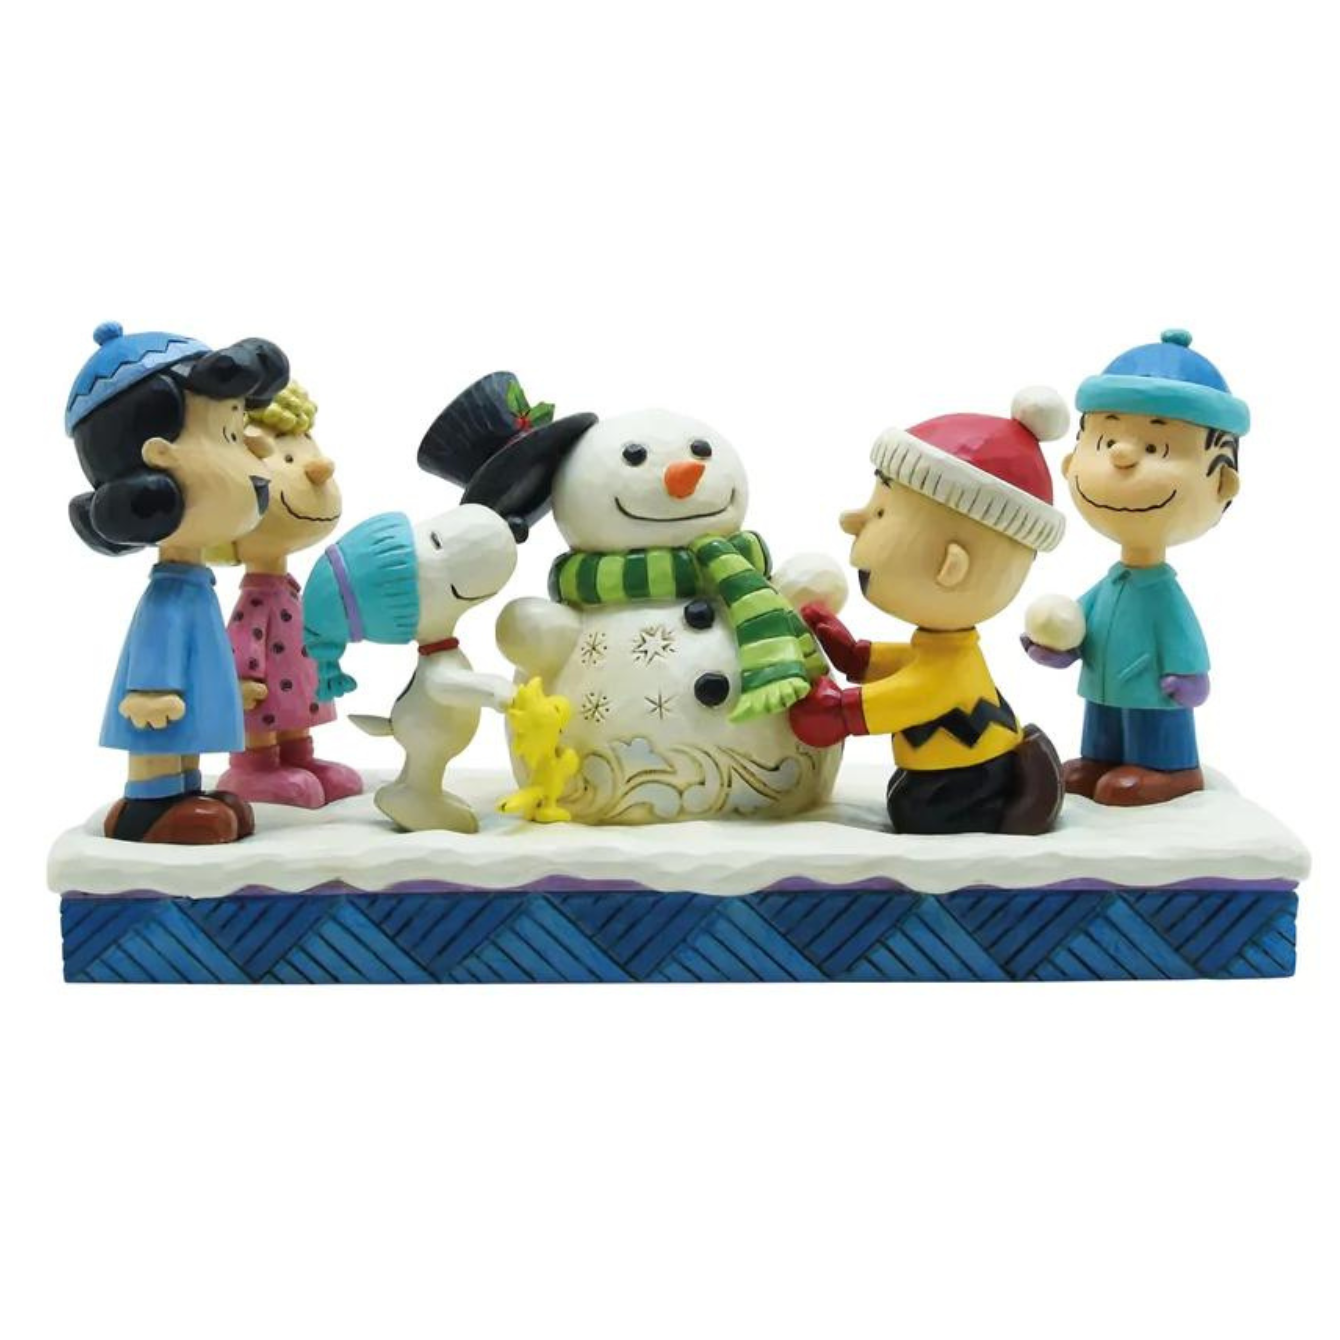 Peanuts Gang Building Snowman